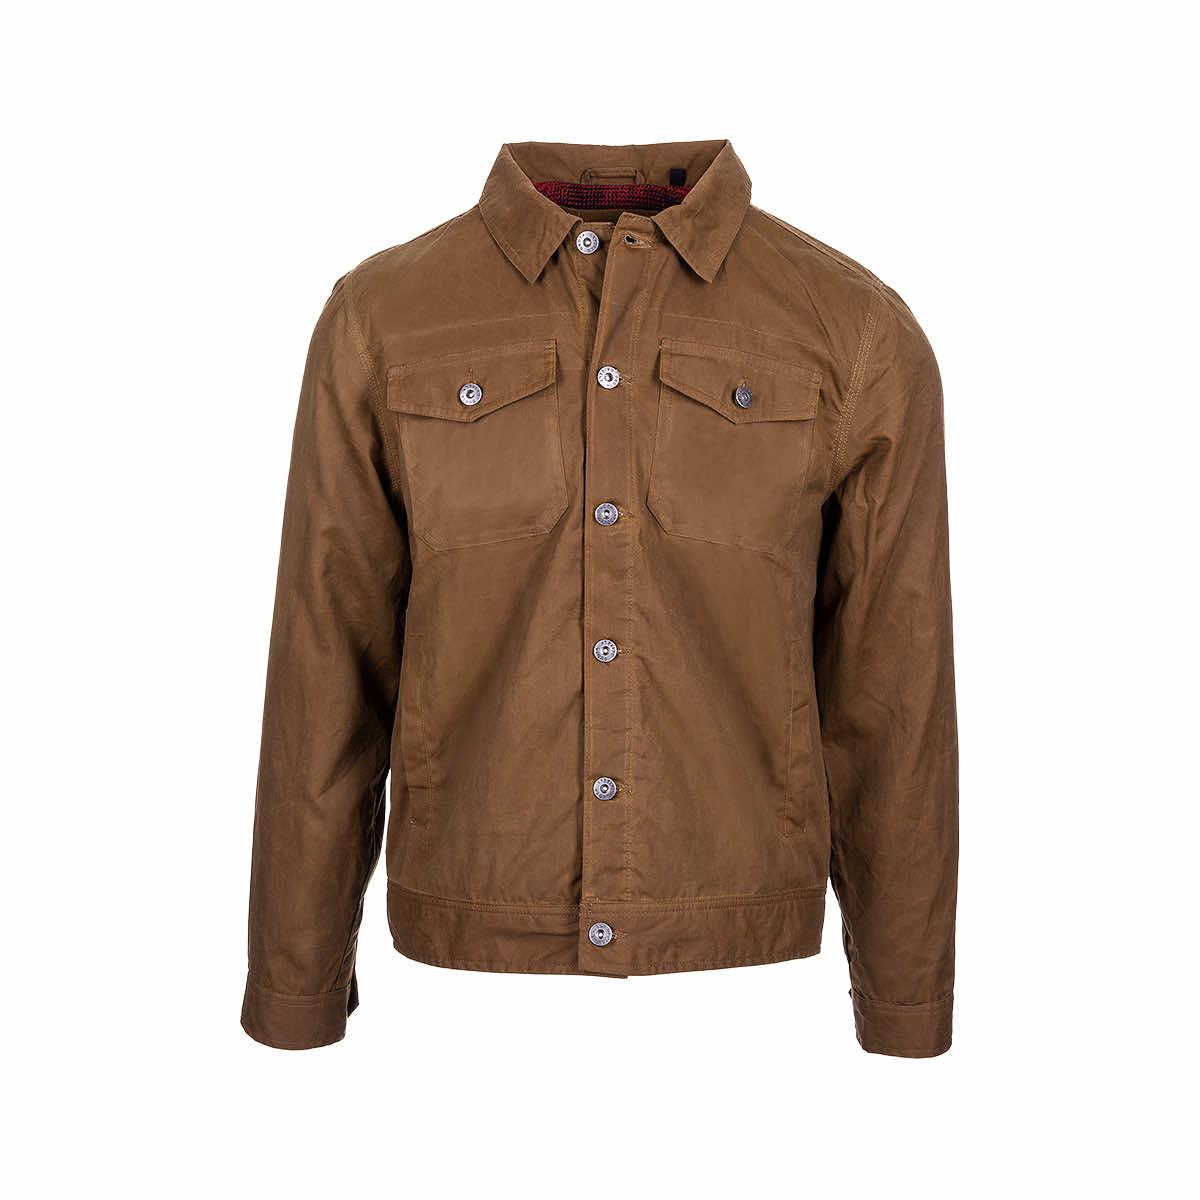  Men's Colt Flannel Lined Jacket